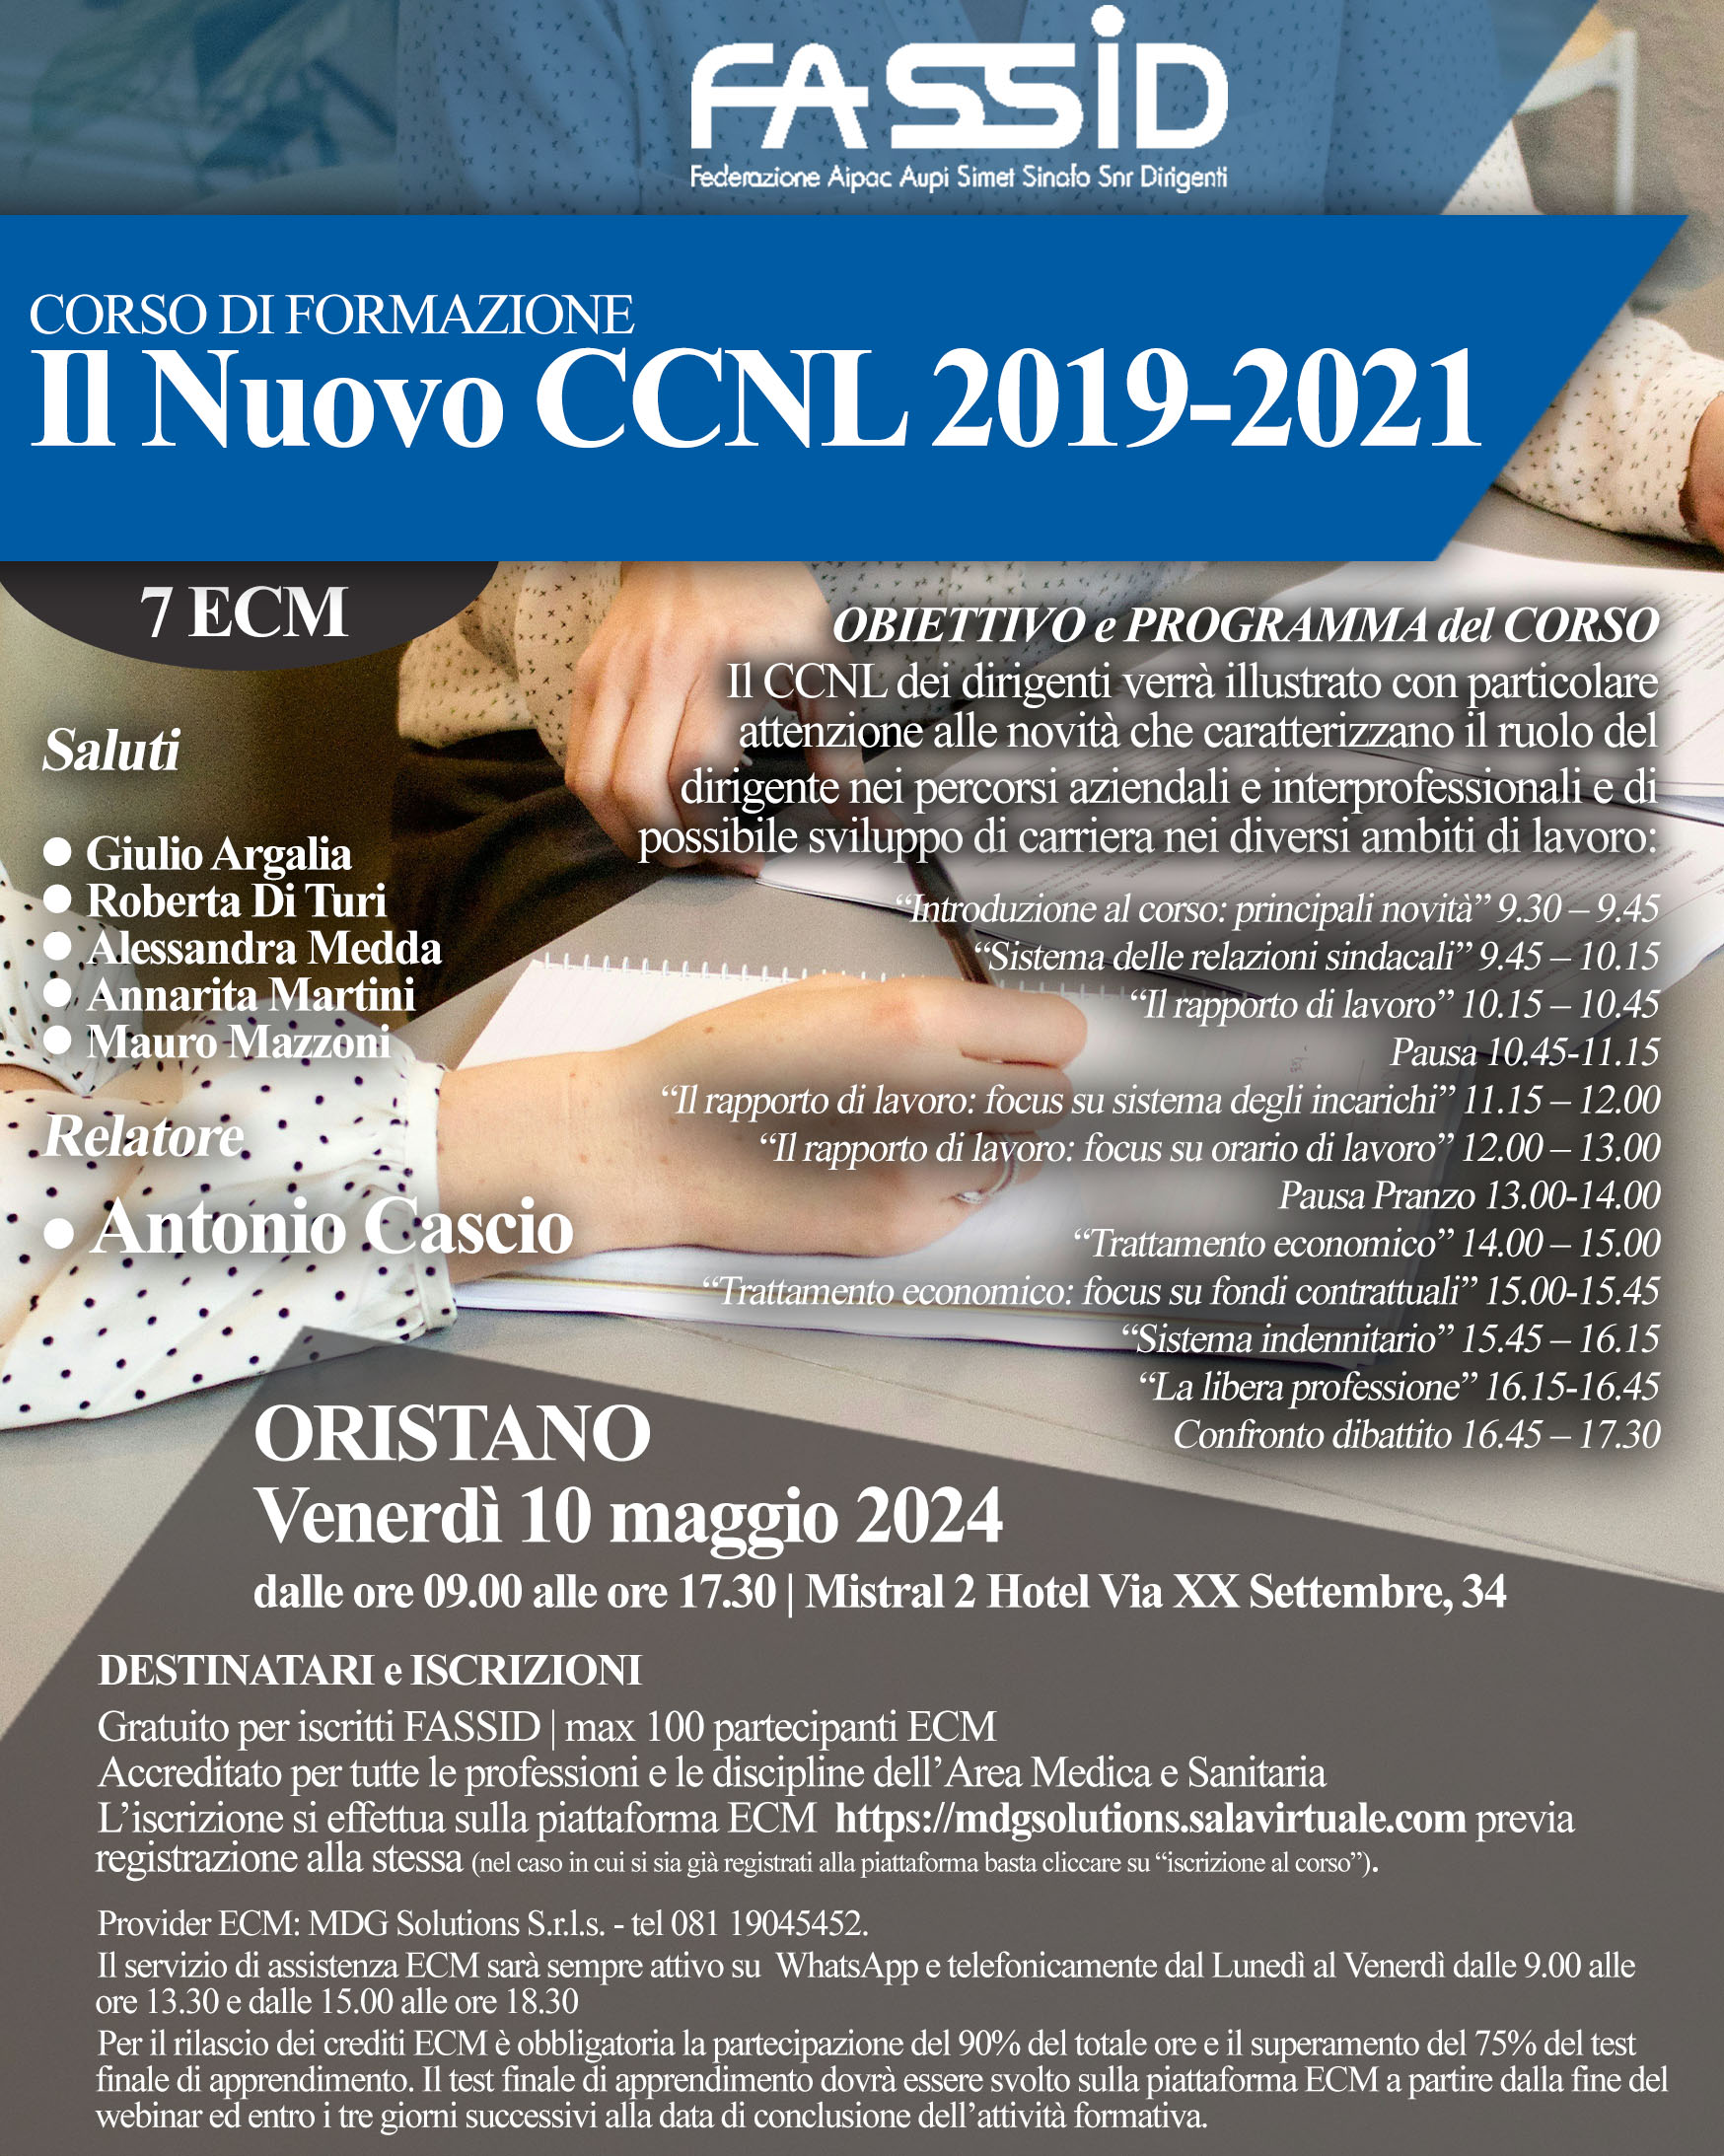 IL NUOVO CCNL 2019-2021 